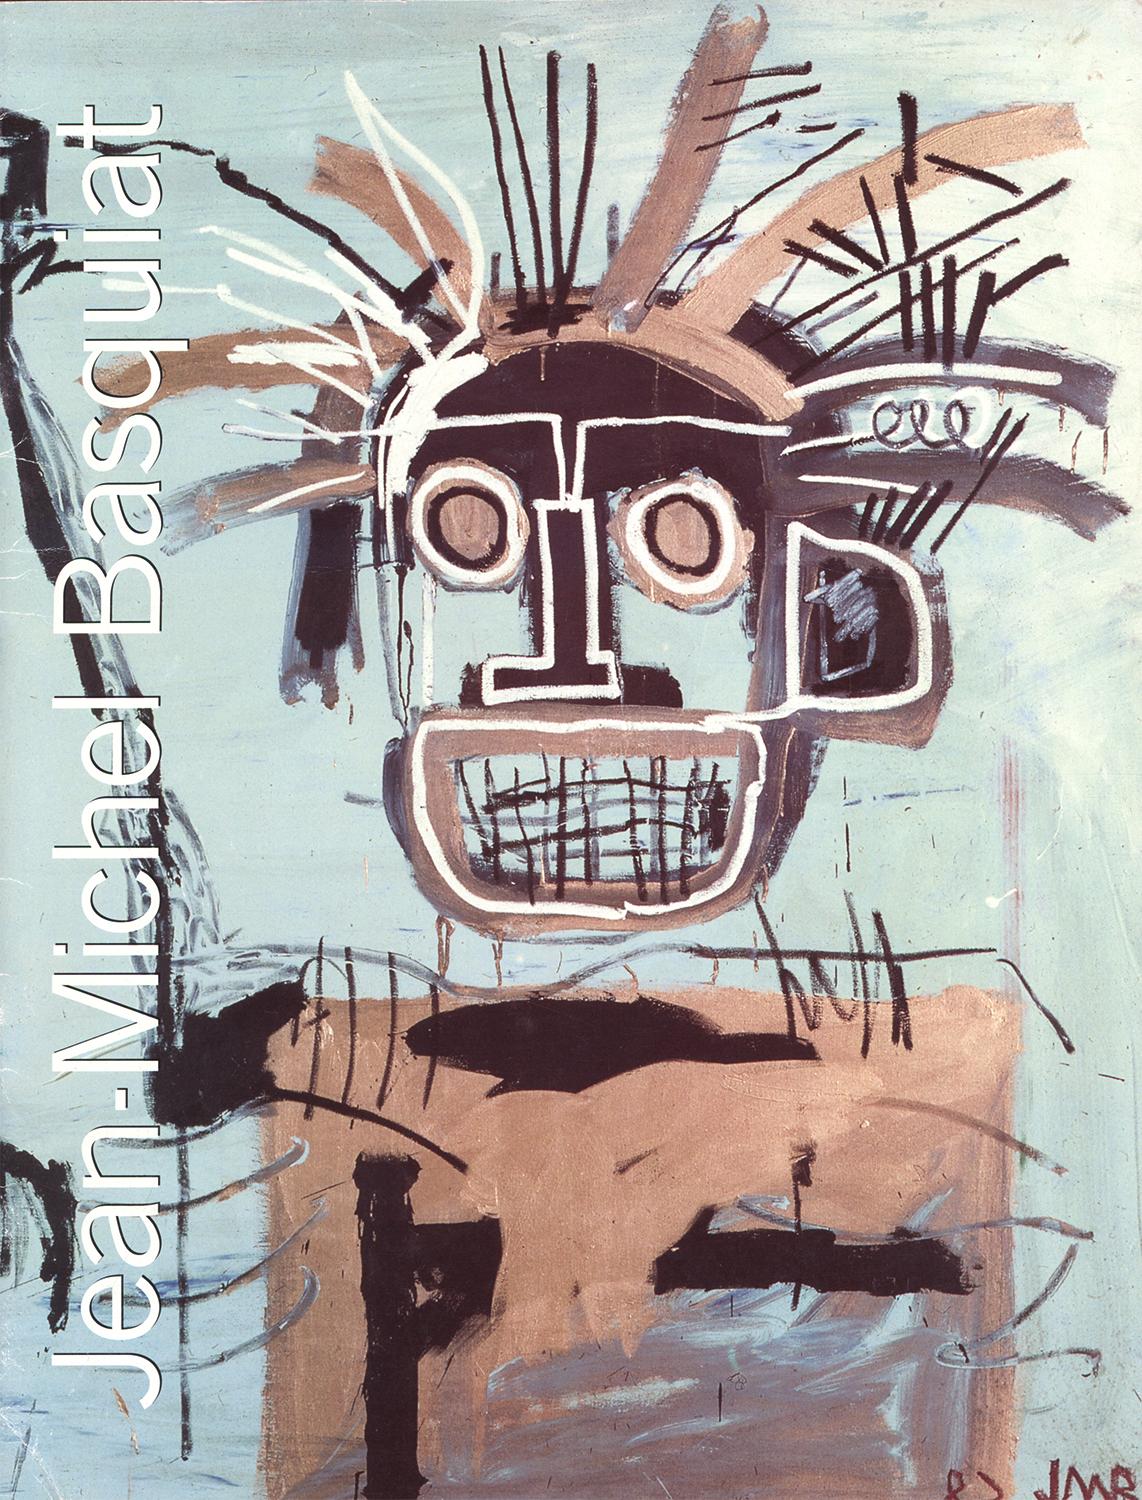 Basquiat Serpentine Gallery London 1996:
Ein seltener, sehr begehrter Basquiat-Ausstellungskatalog aus den 1990er Jahren, der anlässlich von Basquiats erster großer Ausstellung in London veröffentlicht wurde: Jean-Michel Basquiat, Serpentine